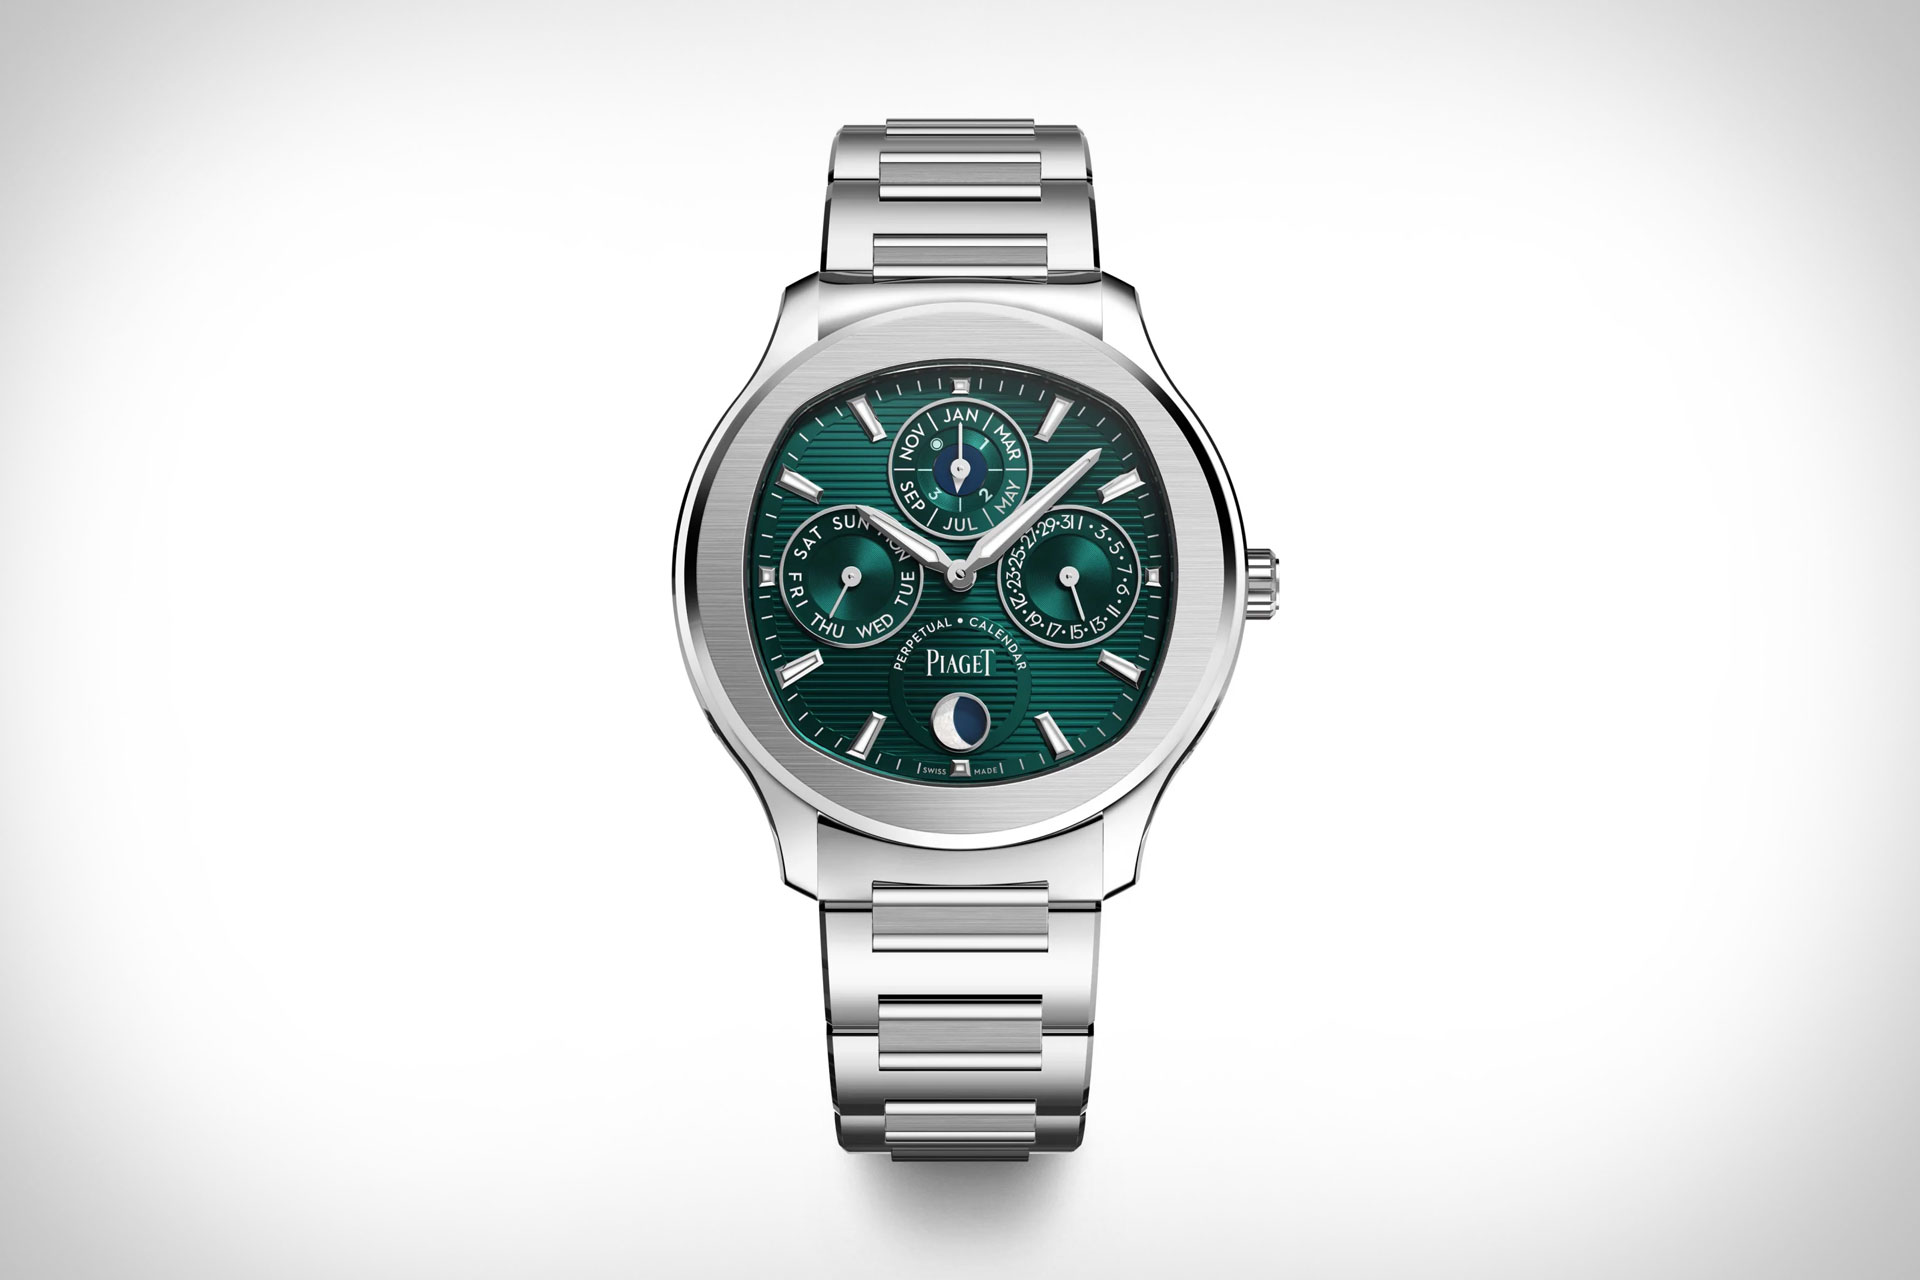 Piaget Polo Perpetual Calendar Ultra-Thin Watch, #Piaget #Polo #Perpetual #Calendar #UltraThin #Watch